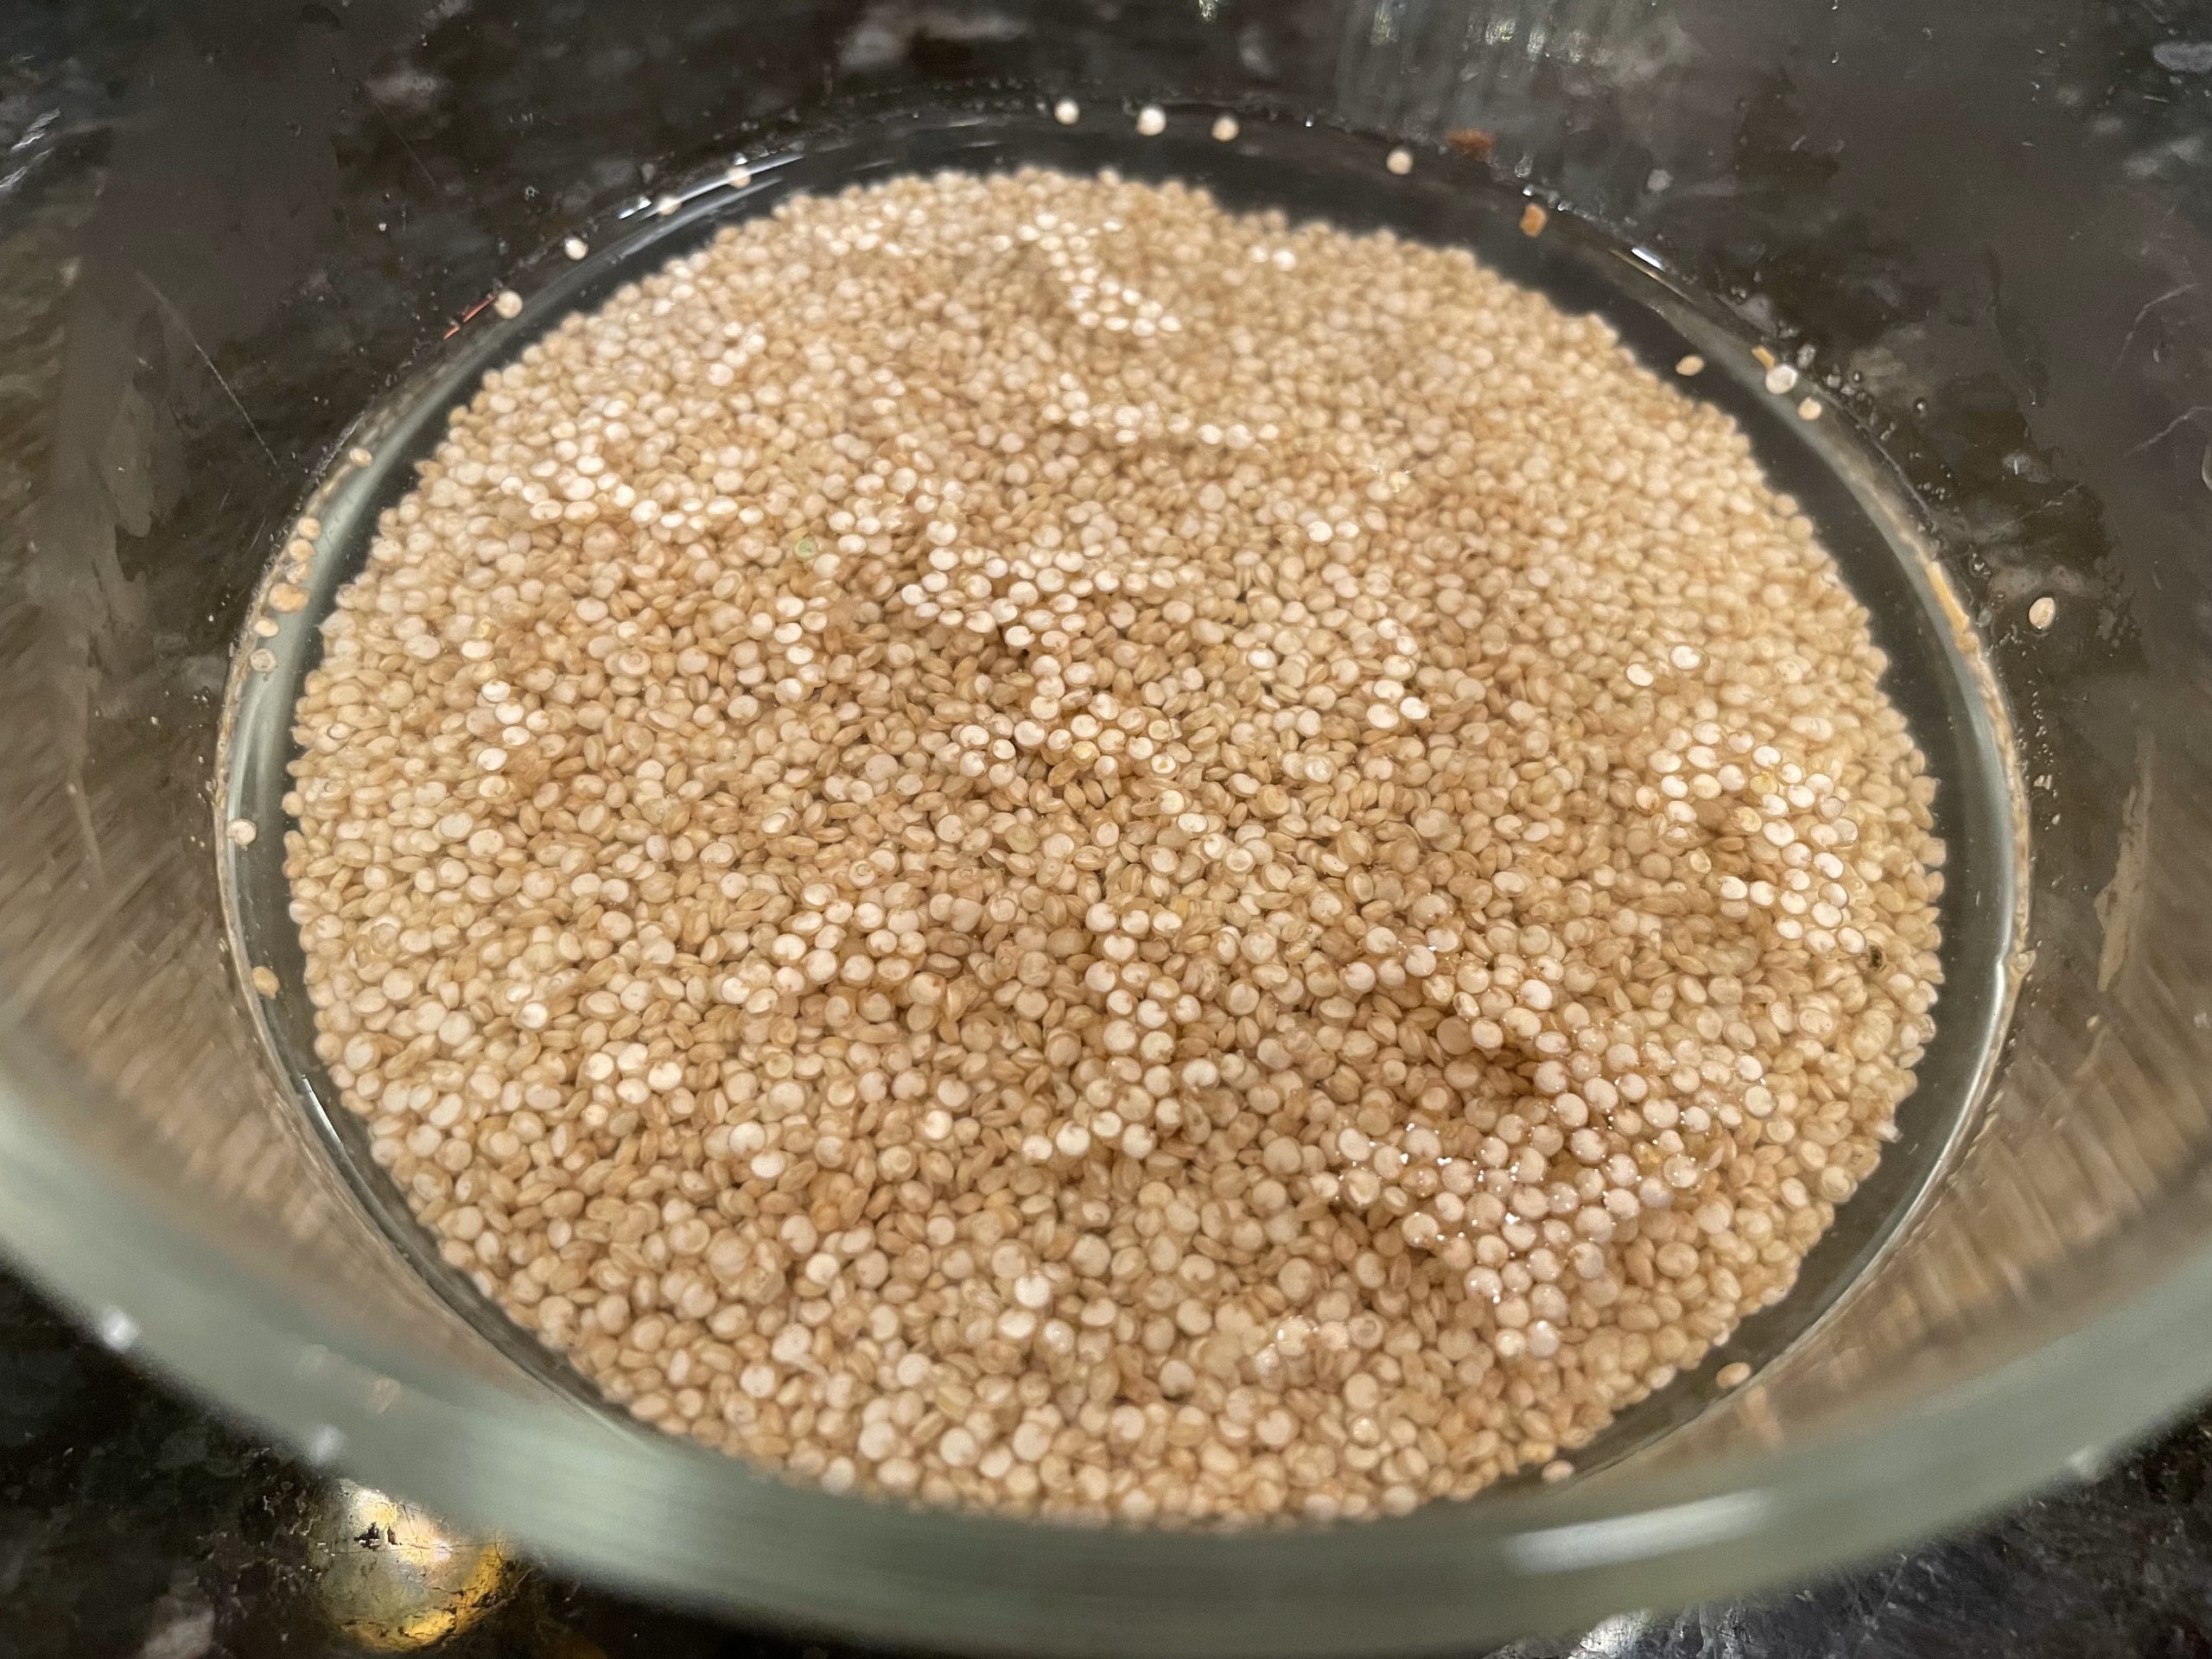 Soaked raw quinoa